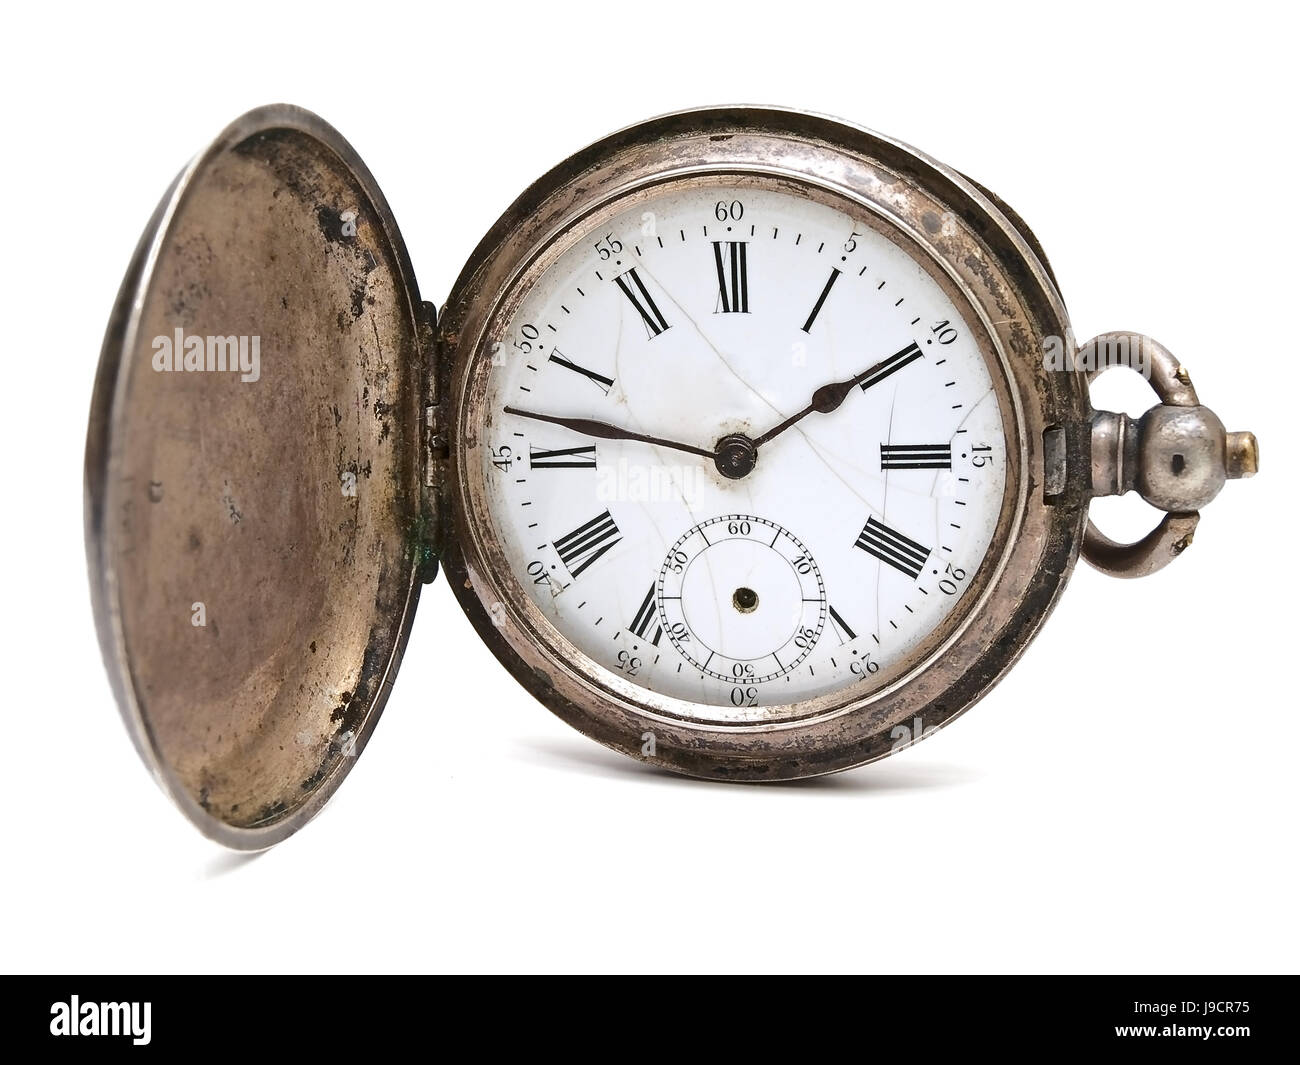 Определить возраст часов. Старинные часы на белом фоне. Старинные часы на цепочке. Антикварные часы на белом фоне. Старинные серебряные часы.